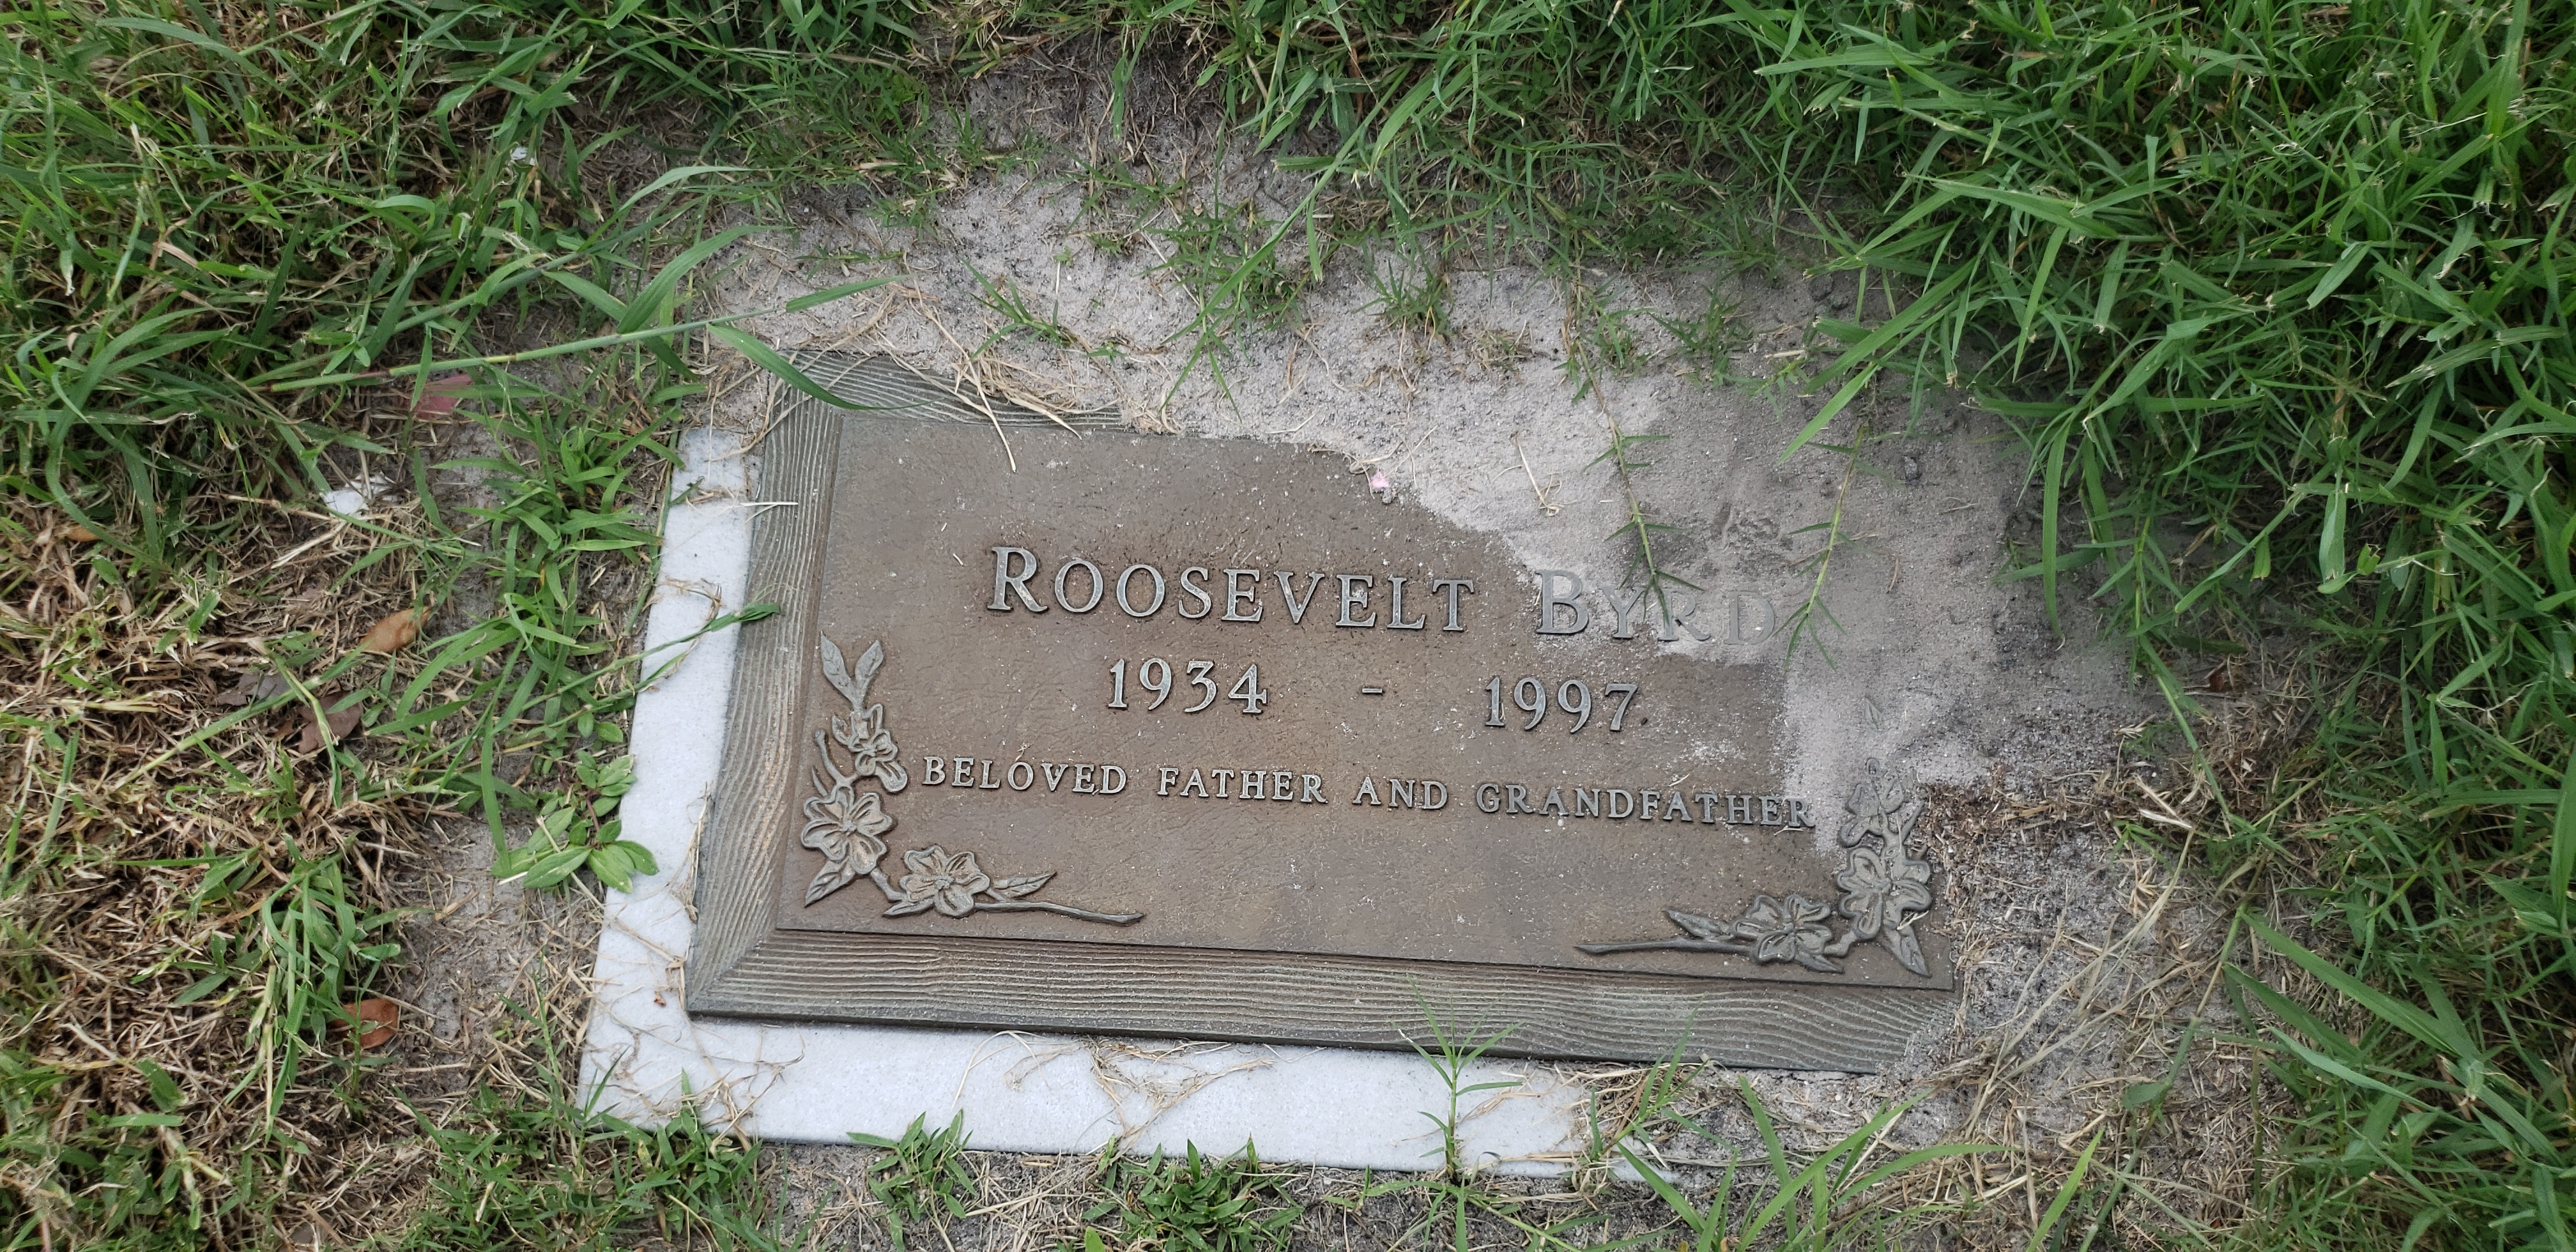 Roosevelt Byrd